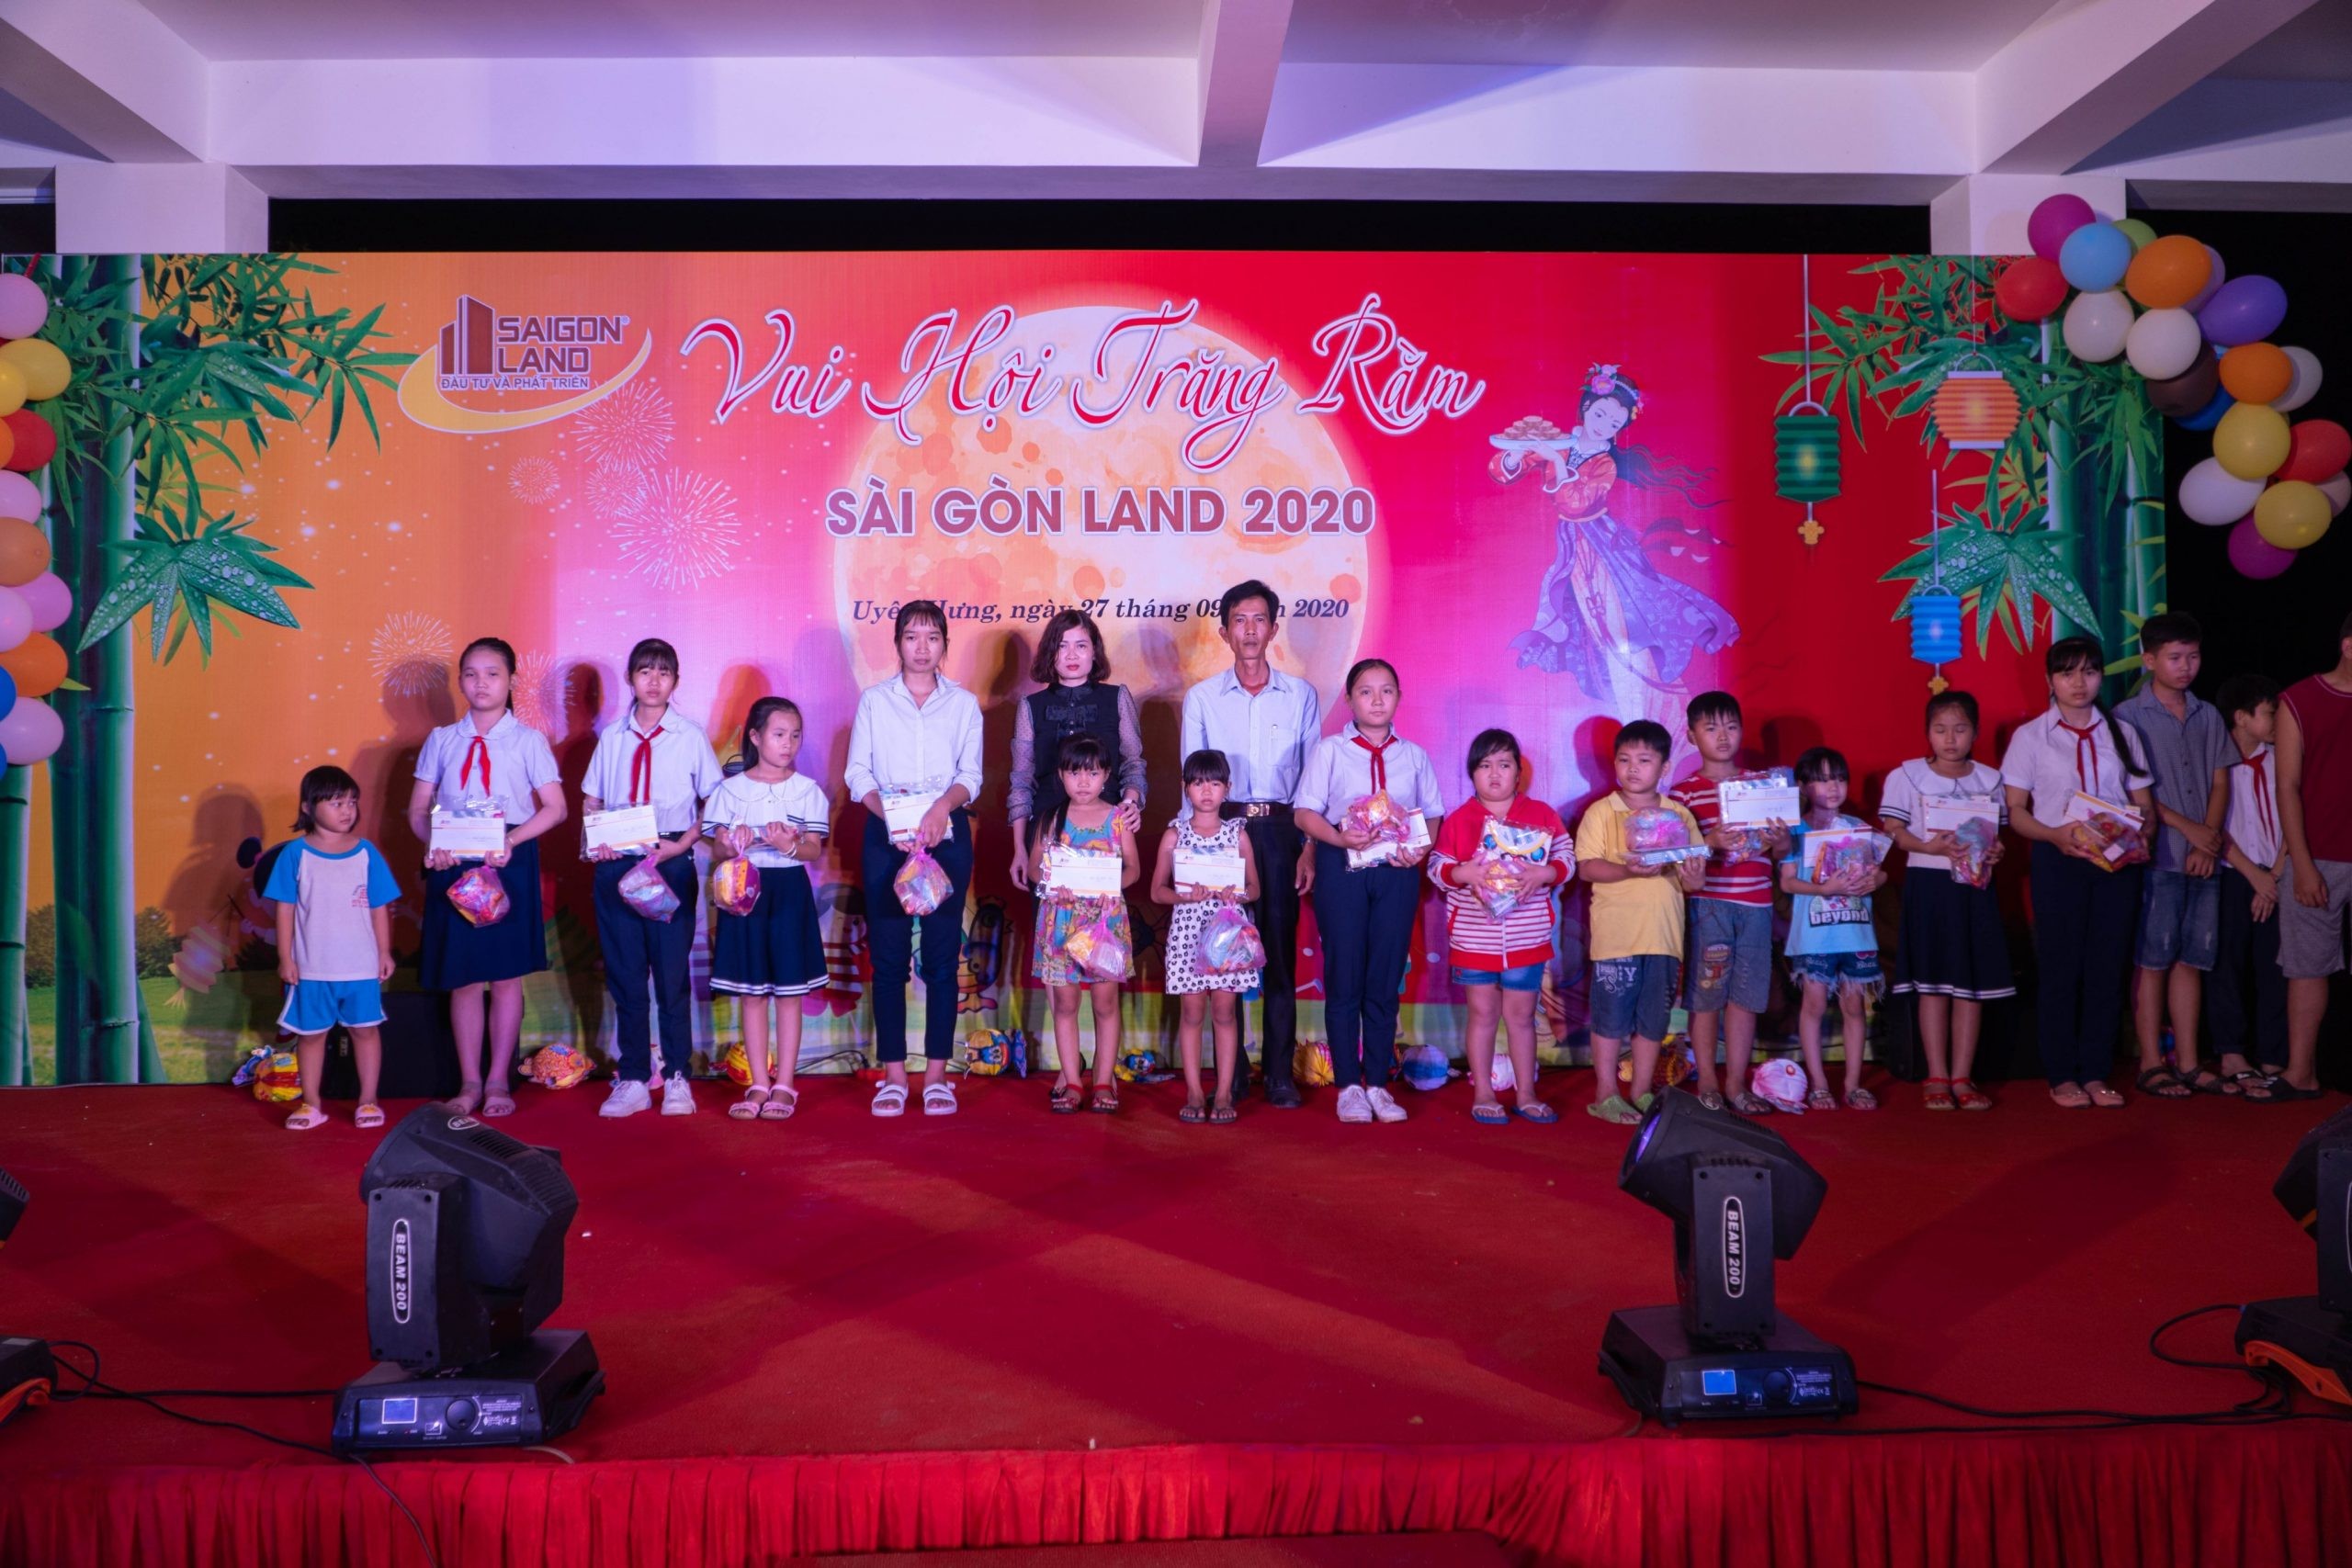 

Saigonland tổ chức đêm hội trăng rằm
